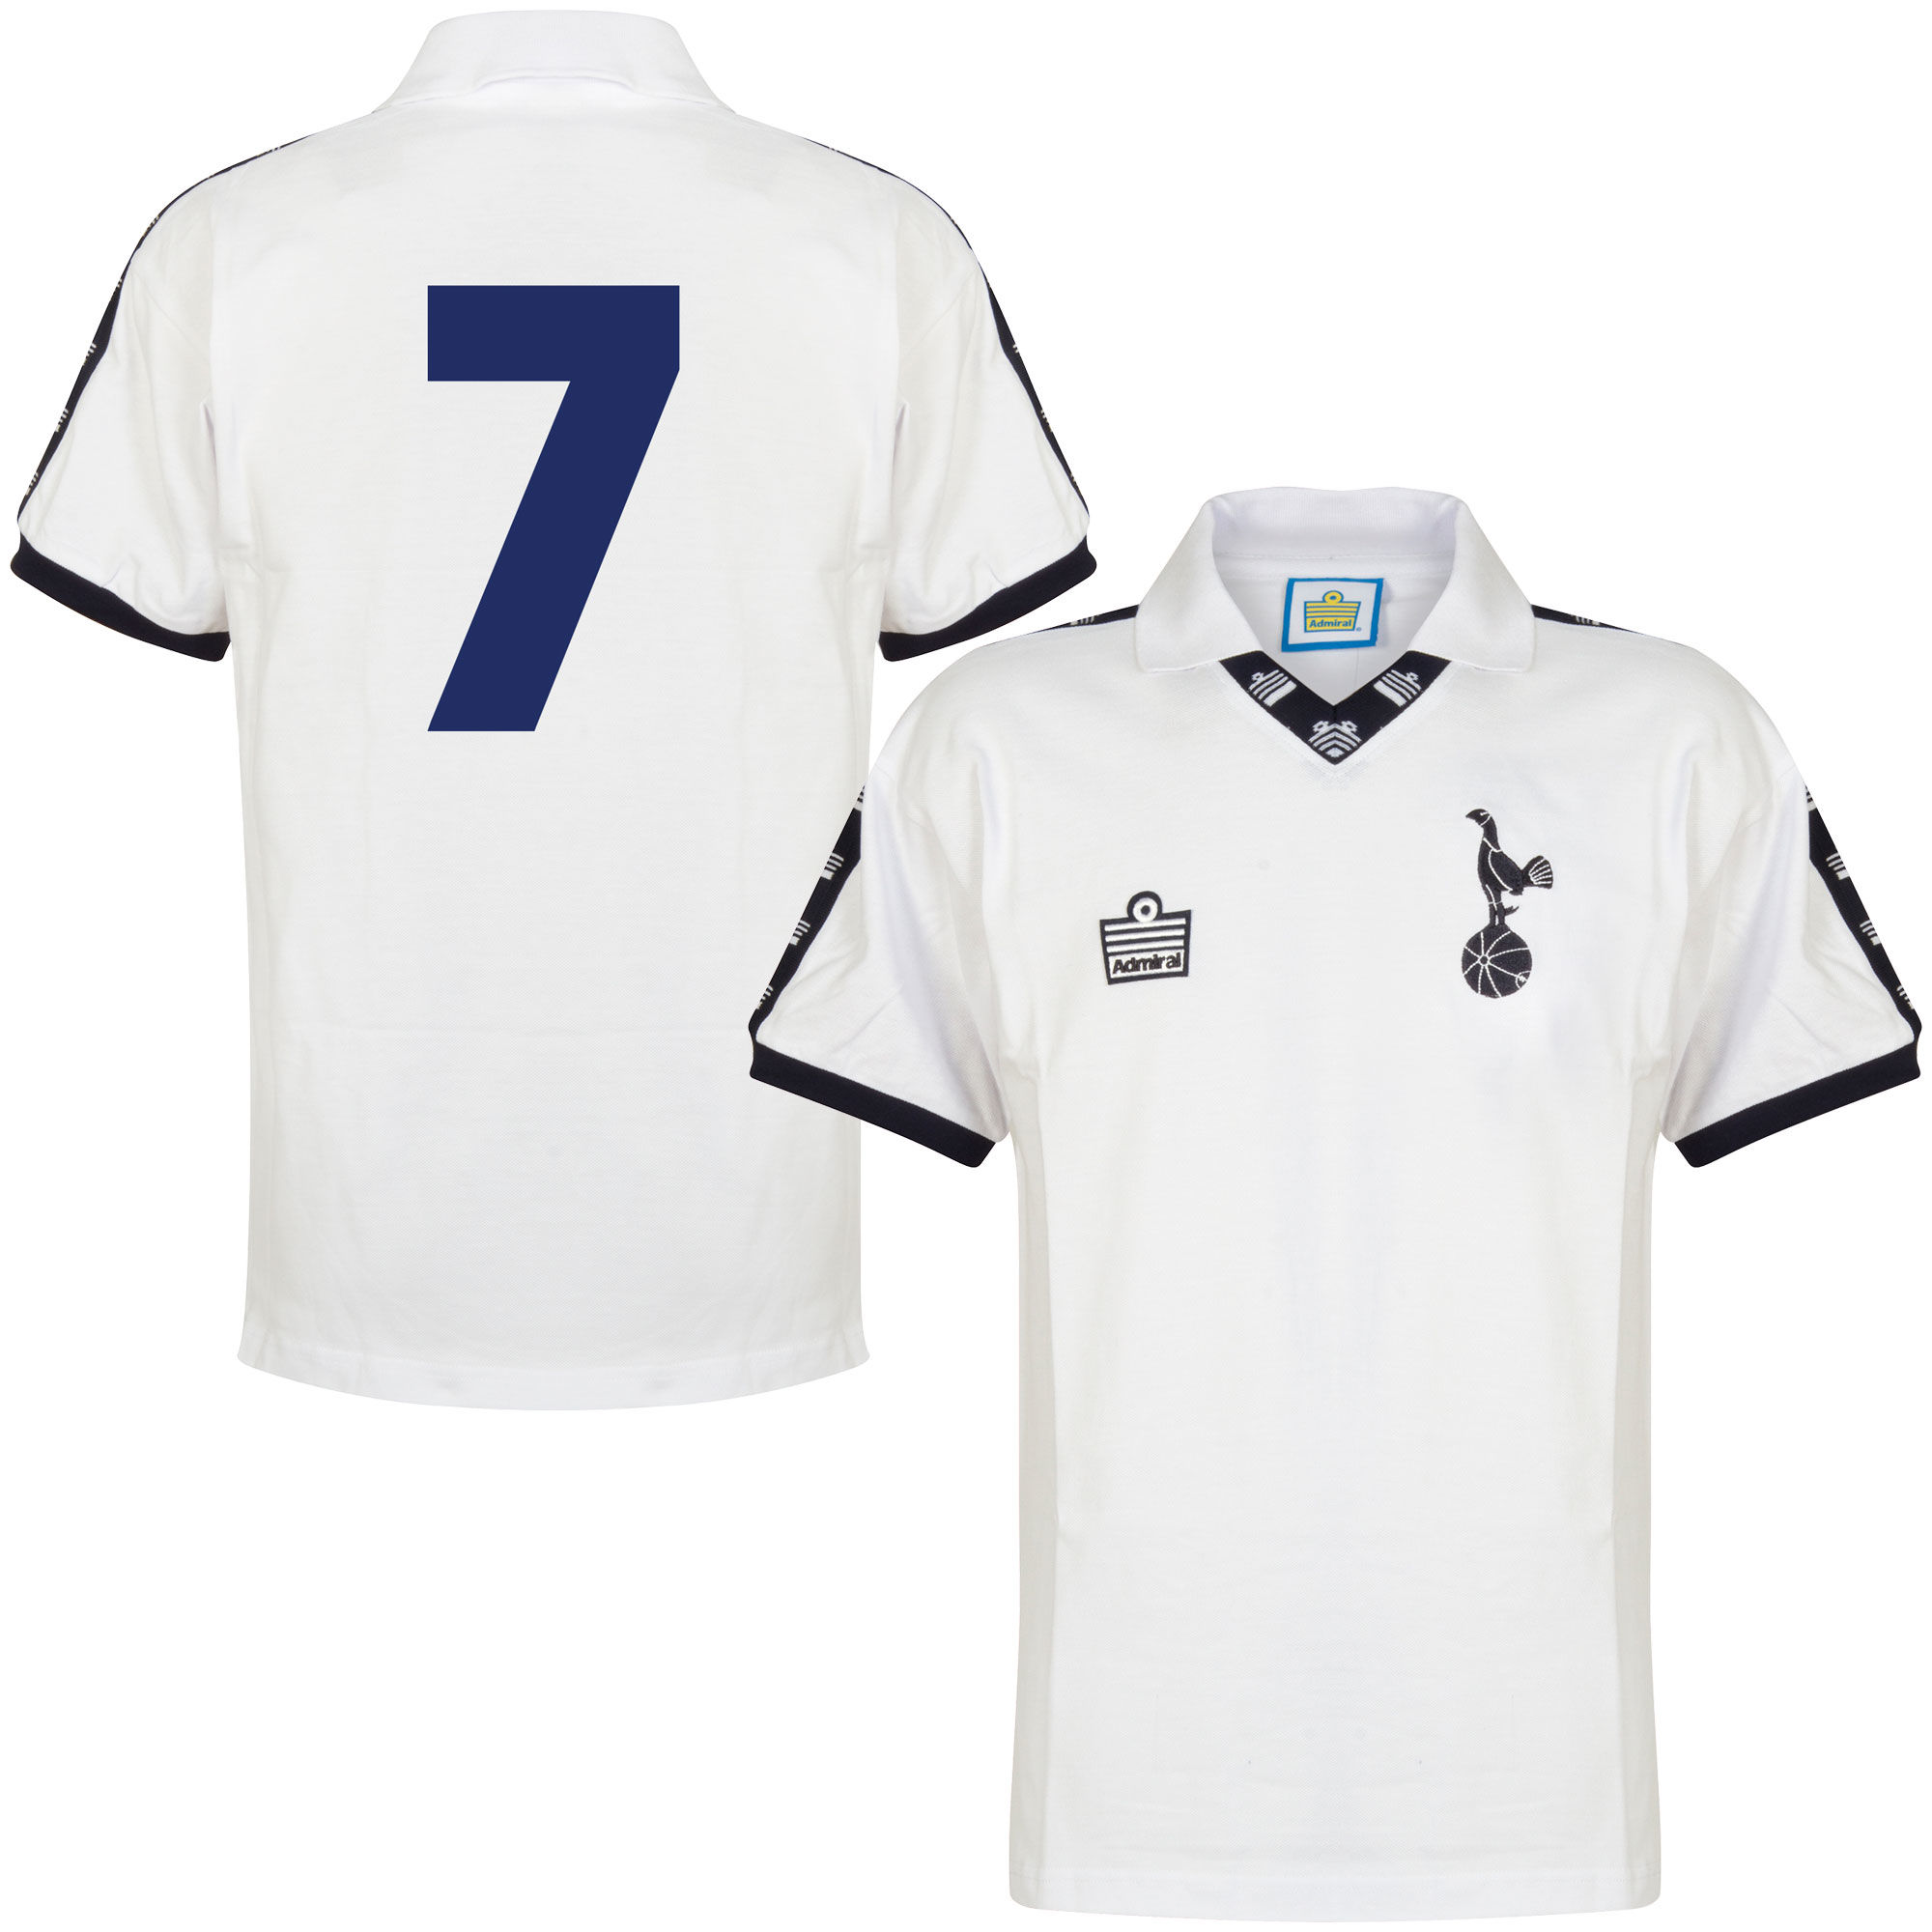 Tottenham Hotspur - Dres fotbalový - bílý, retrostyl, číslo 7, sezóna 1977/78, domácí